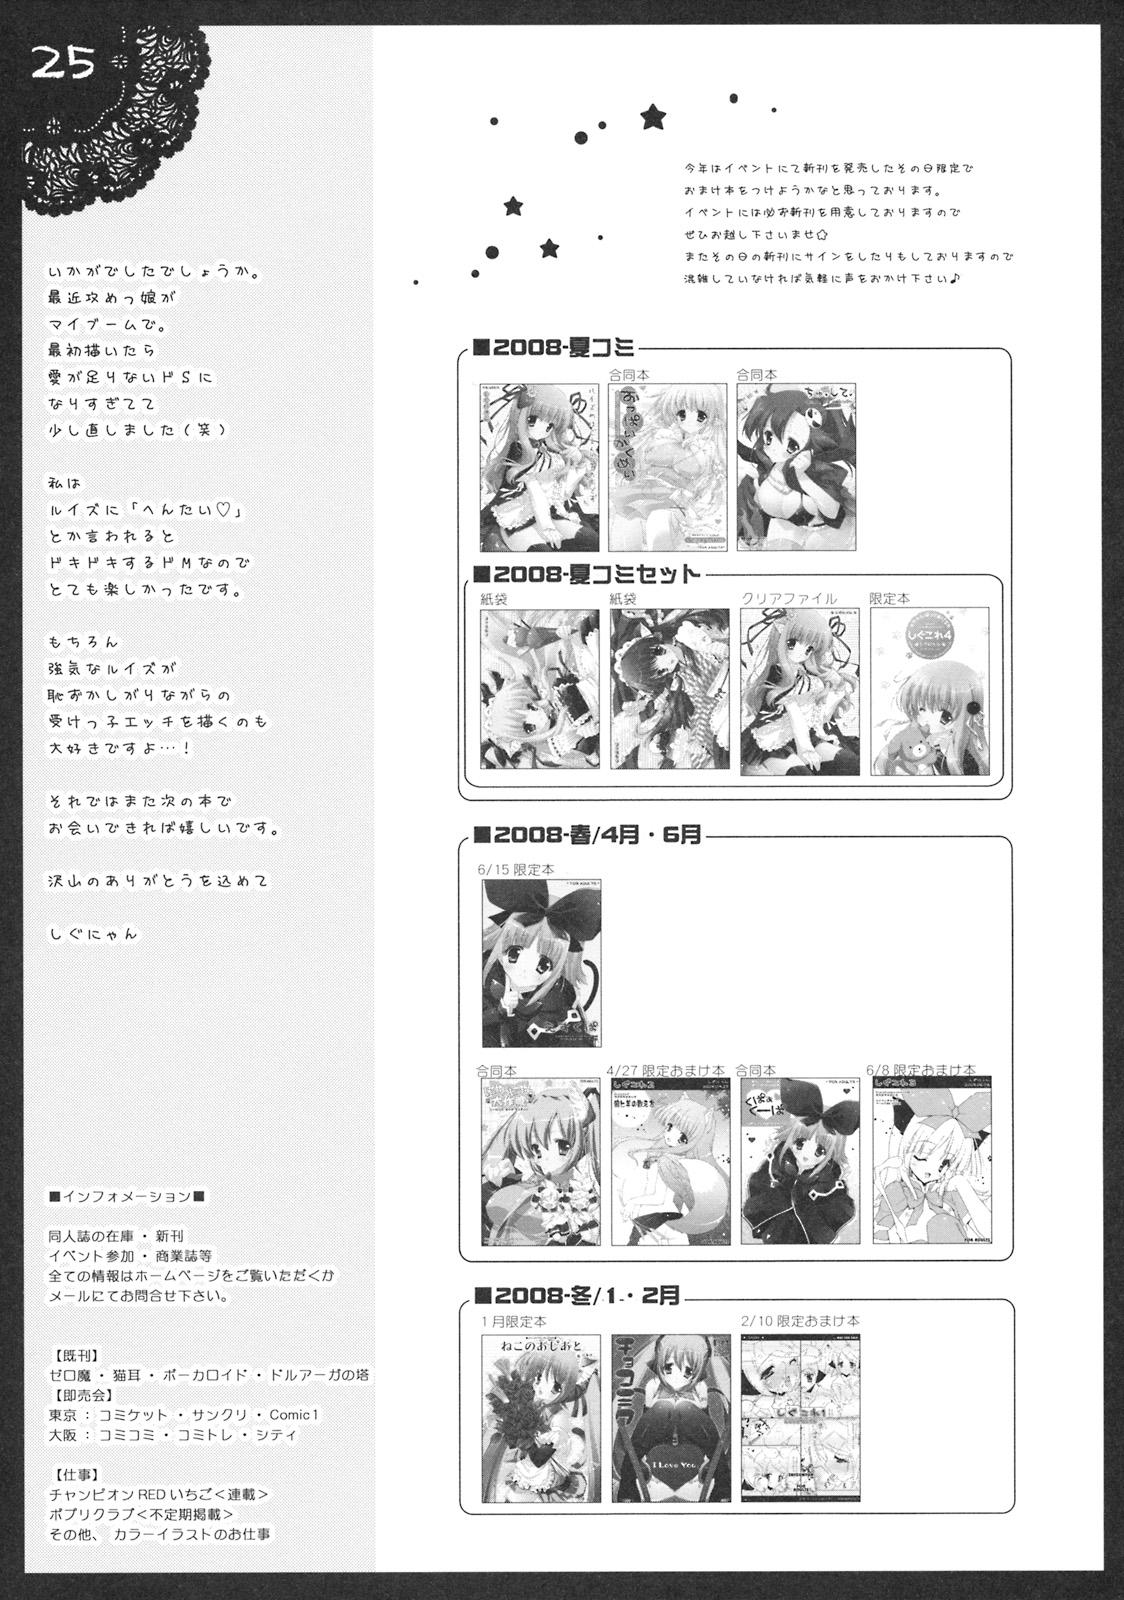 Nudist Shigukore 4 - Zero no tsukaima Grosso - Page 24